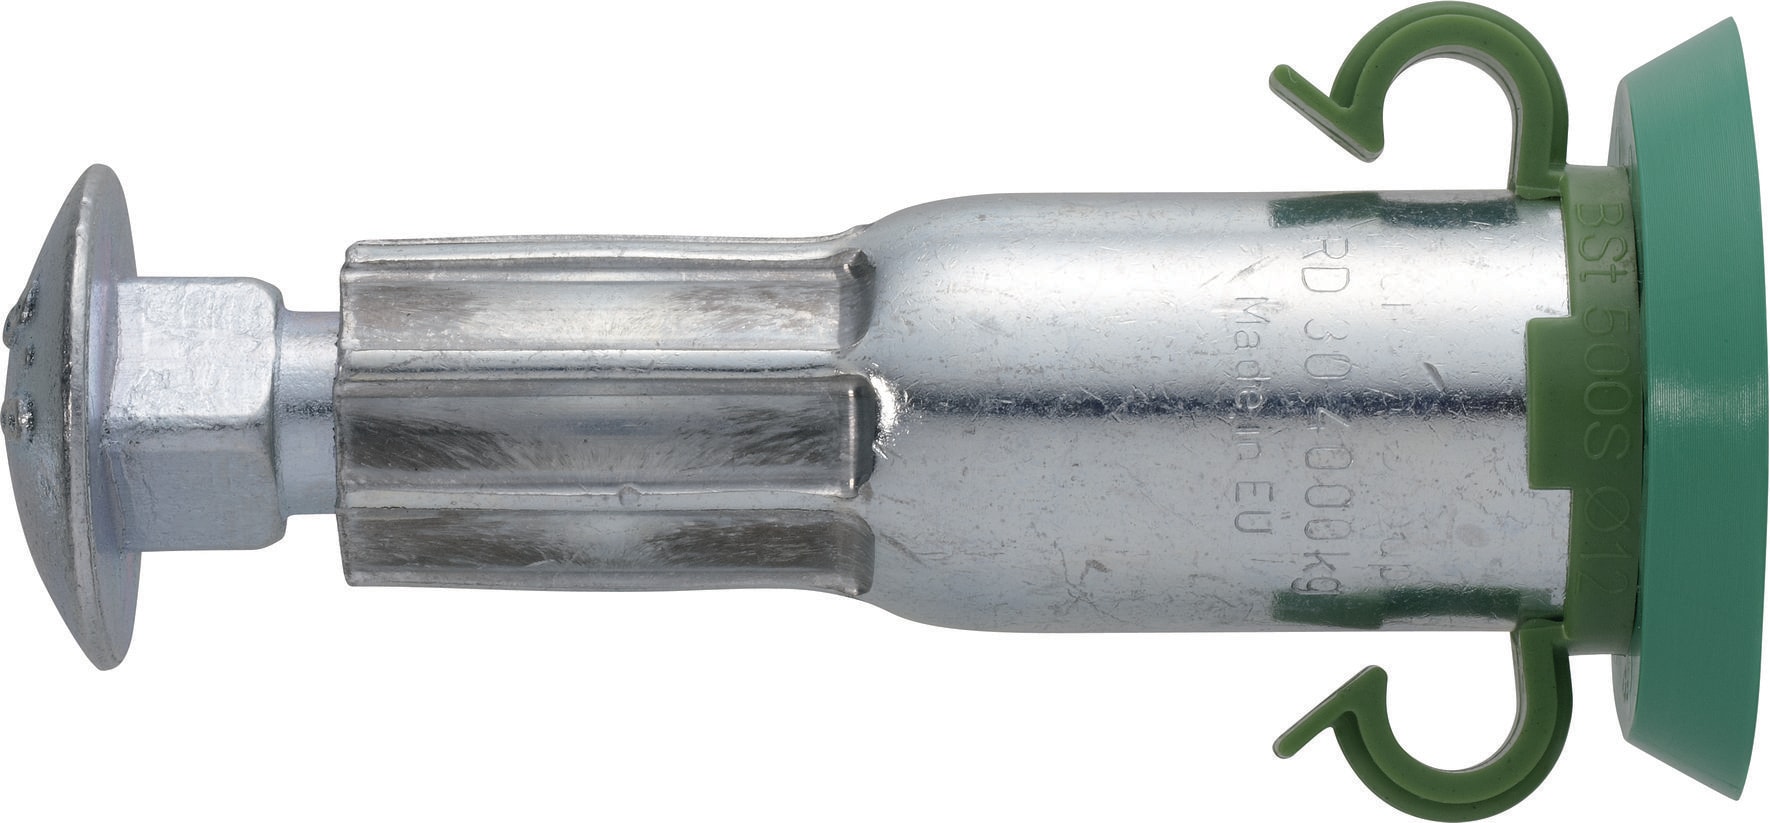 Cible électrique 3 basculeurs ASG avec filet récupérateur, 17348